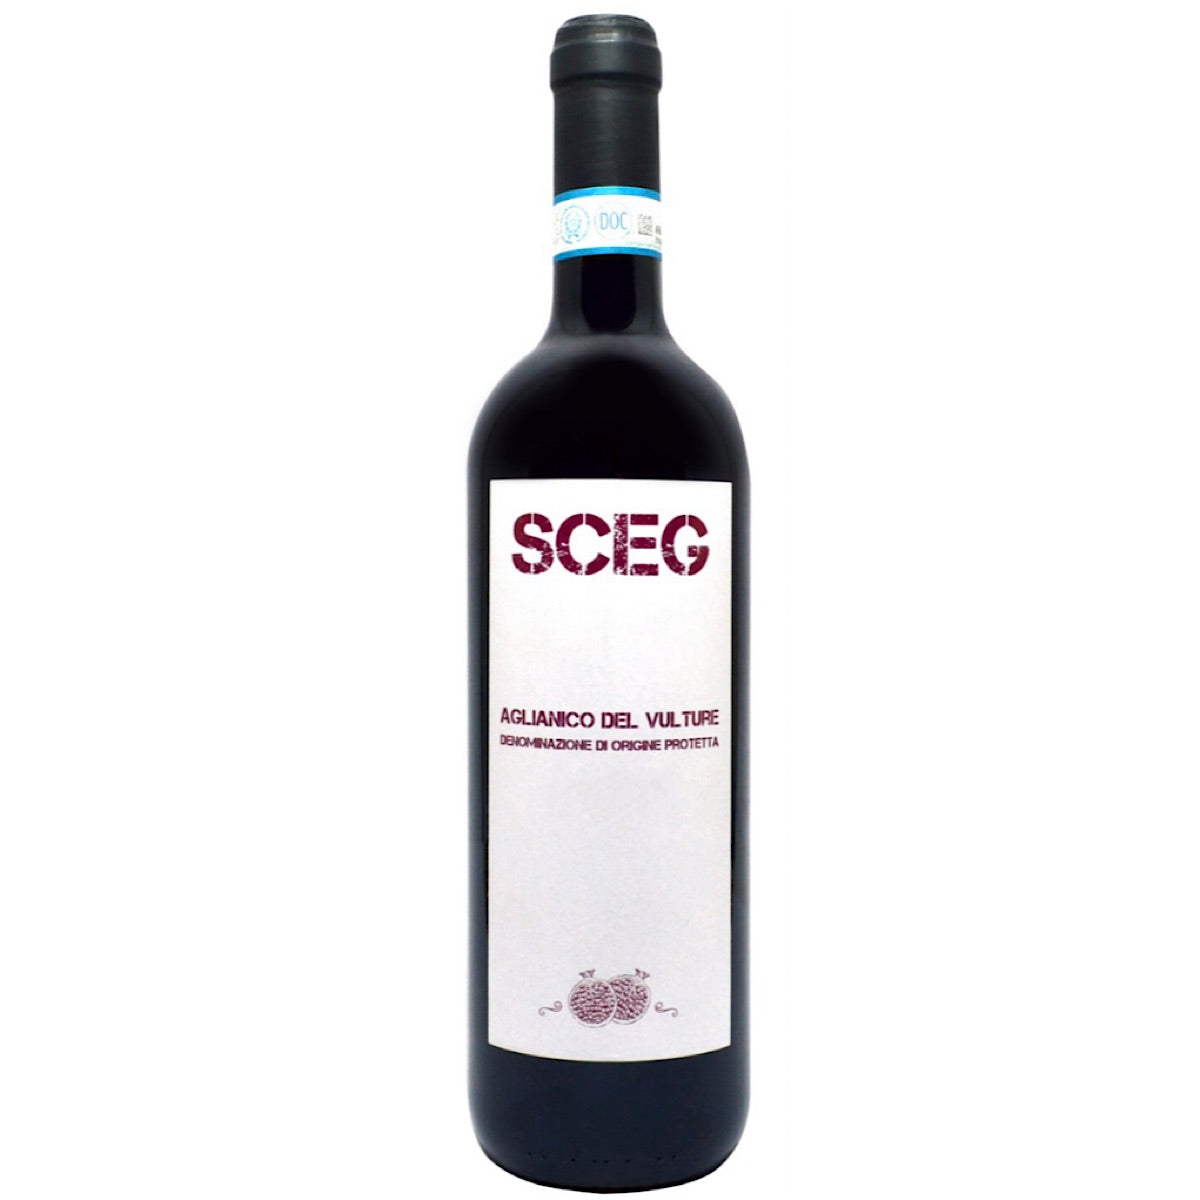 Elena Fucci, Aglianico del Vulture SCEG - Organic, 6 Bottle Case 75cl